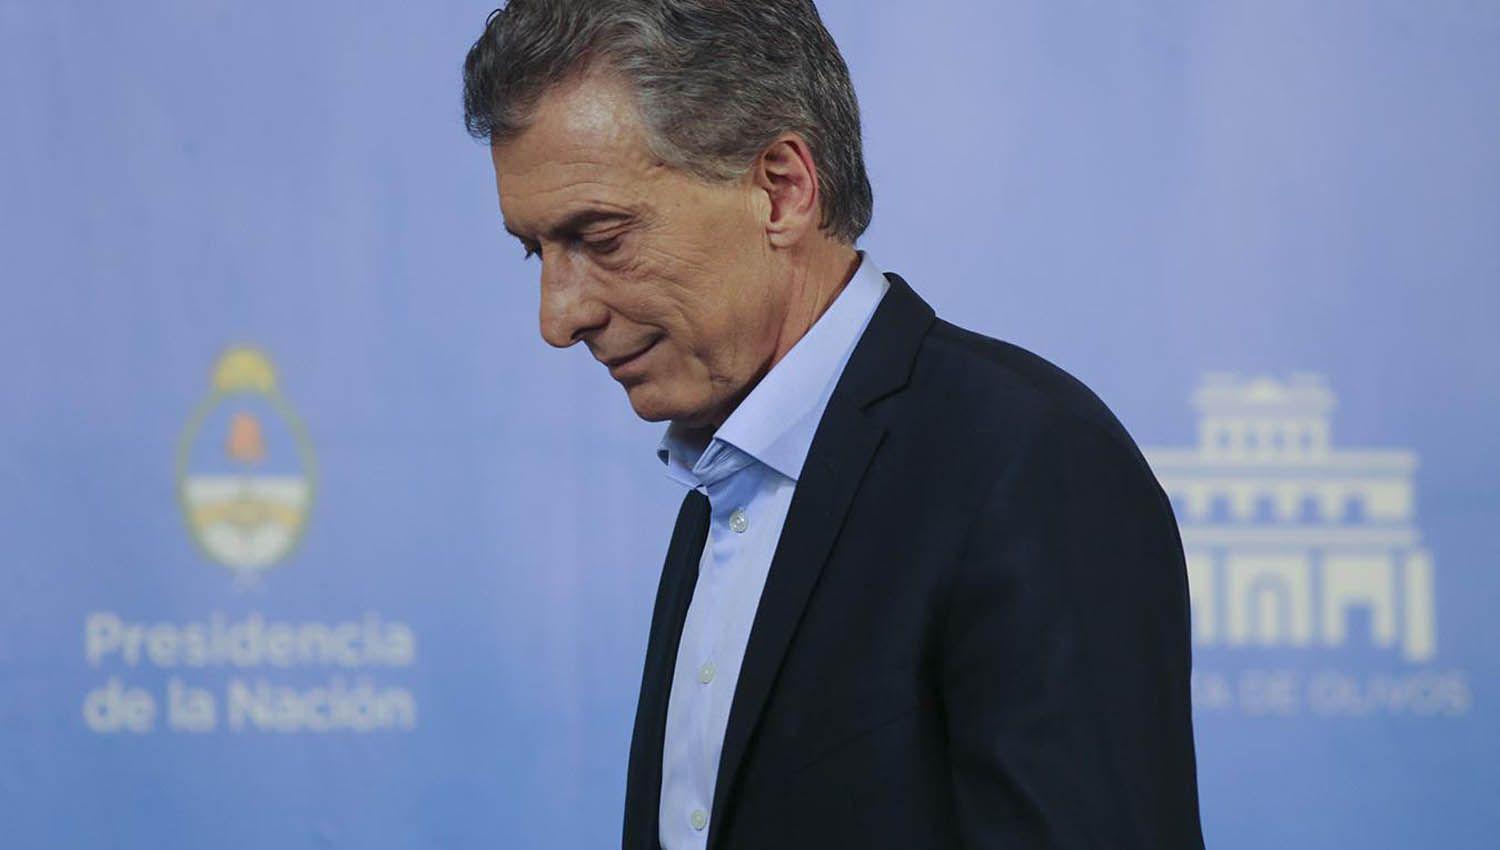 Imputaron a Macri por presunto espionaje ilegal